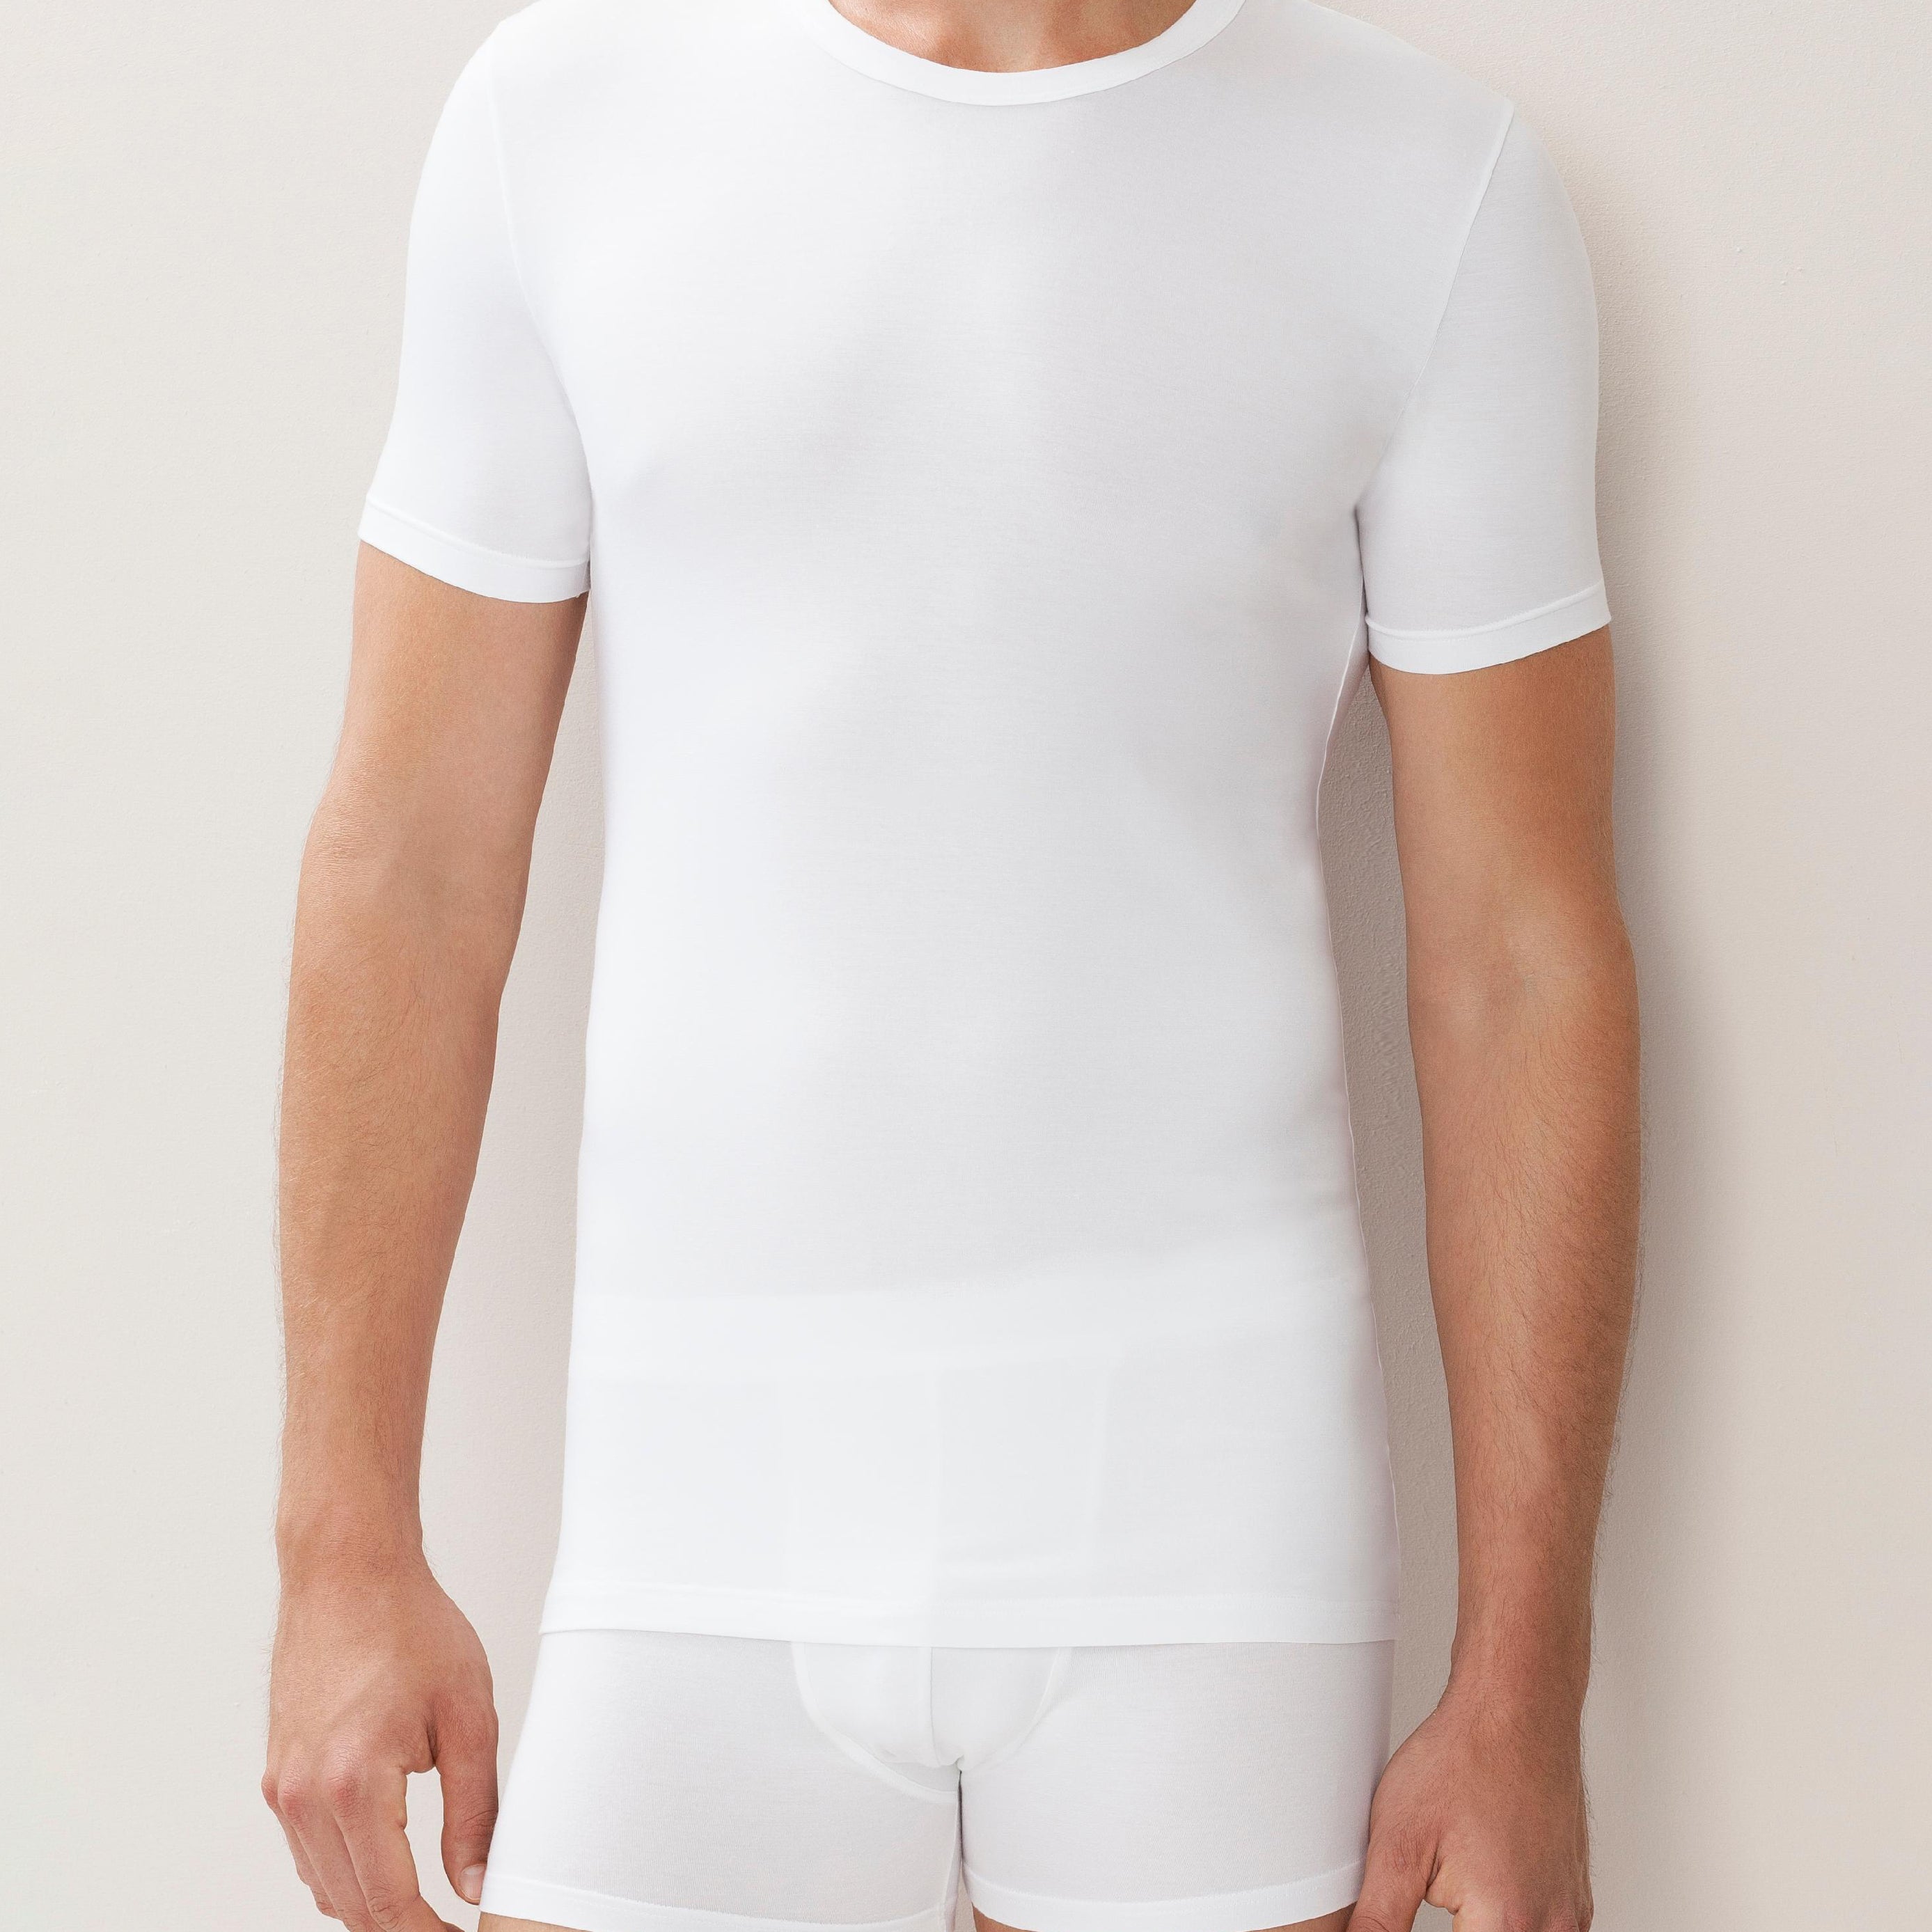 Shirt kurzarm,hoher Rundhals-Ausschnitt 700 PURENESS